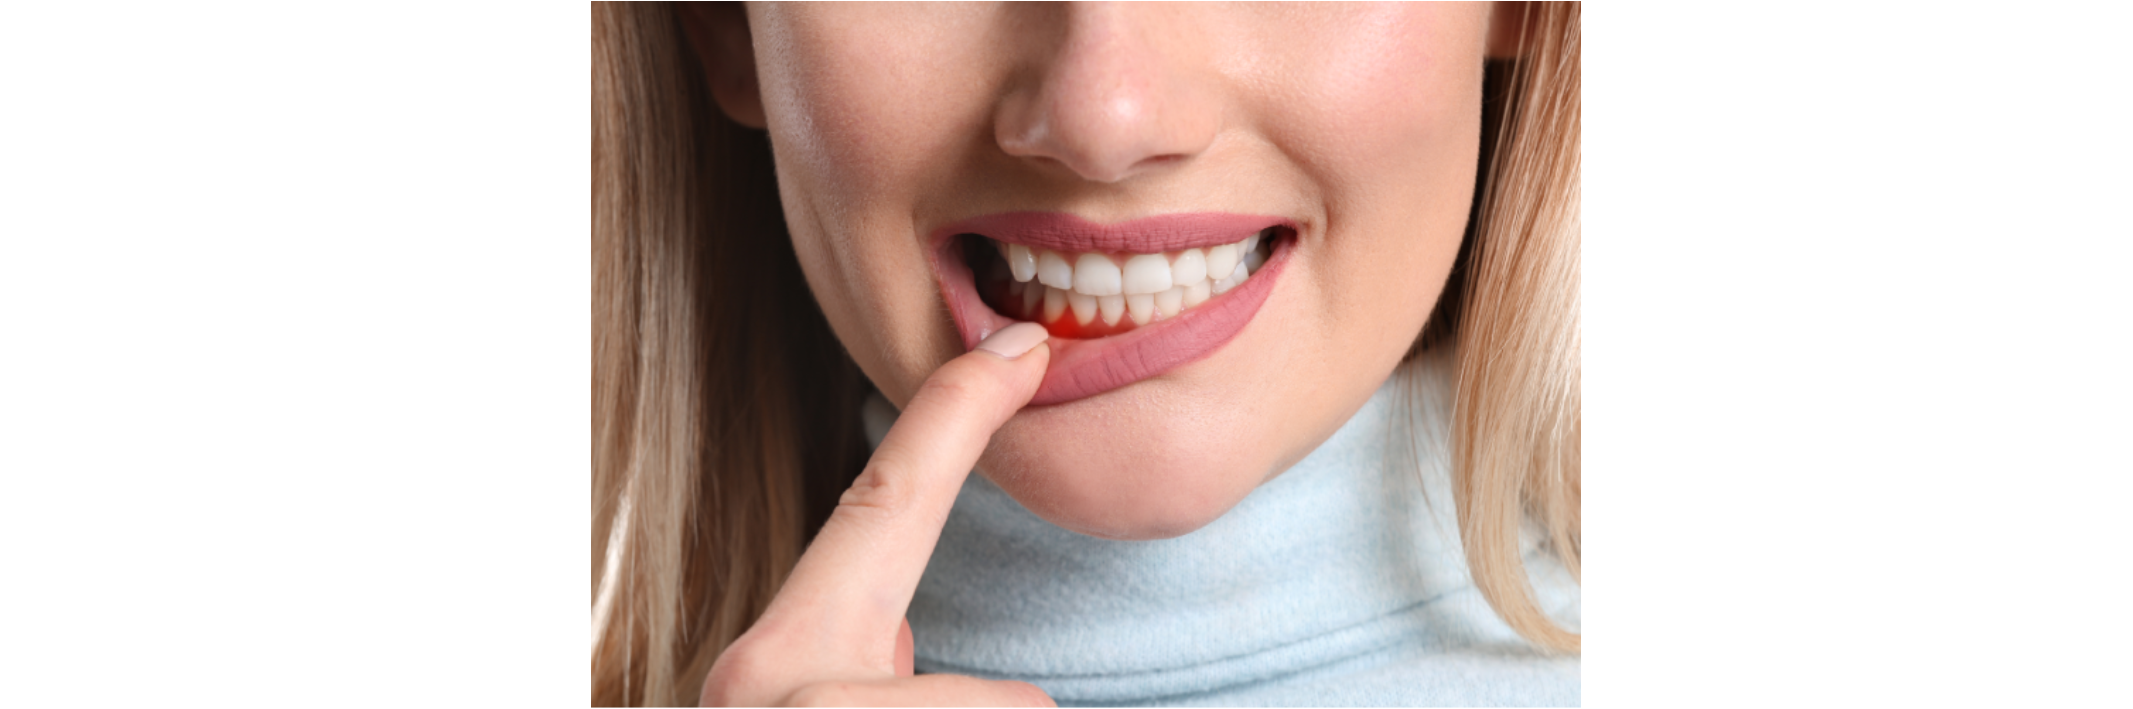 How Is Gum Disease Treated?